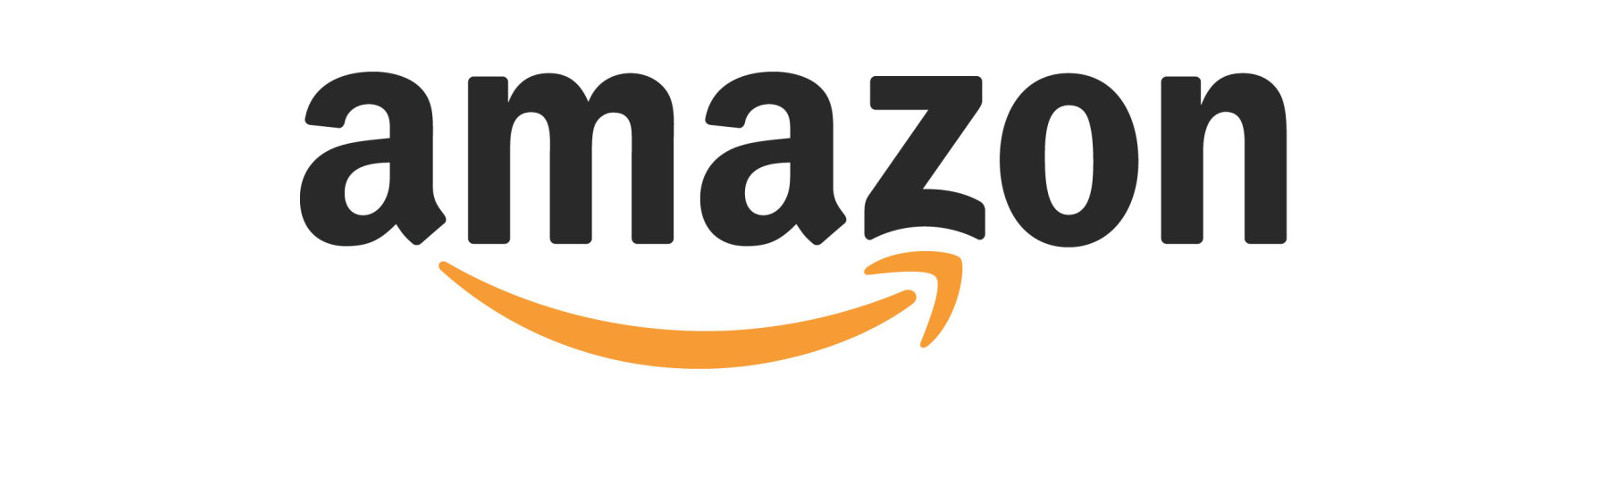 Amazon bietet jetzt unbegrenzten Speicherplatz über Amazon Drive an (Bild: Amazon Pressebilder)